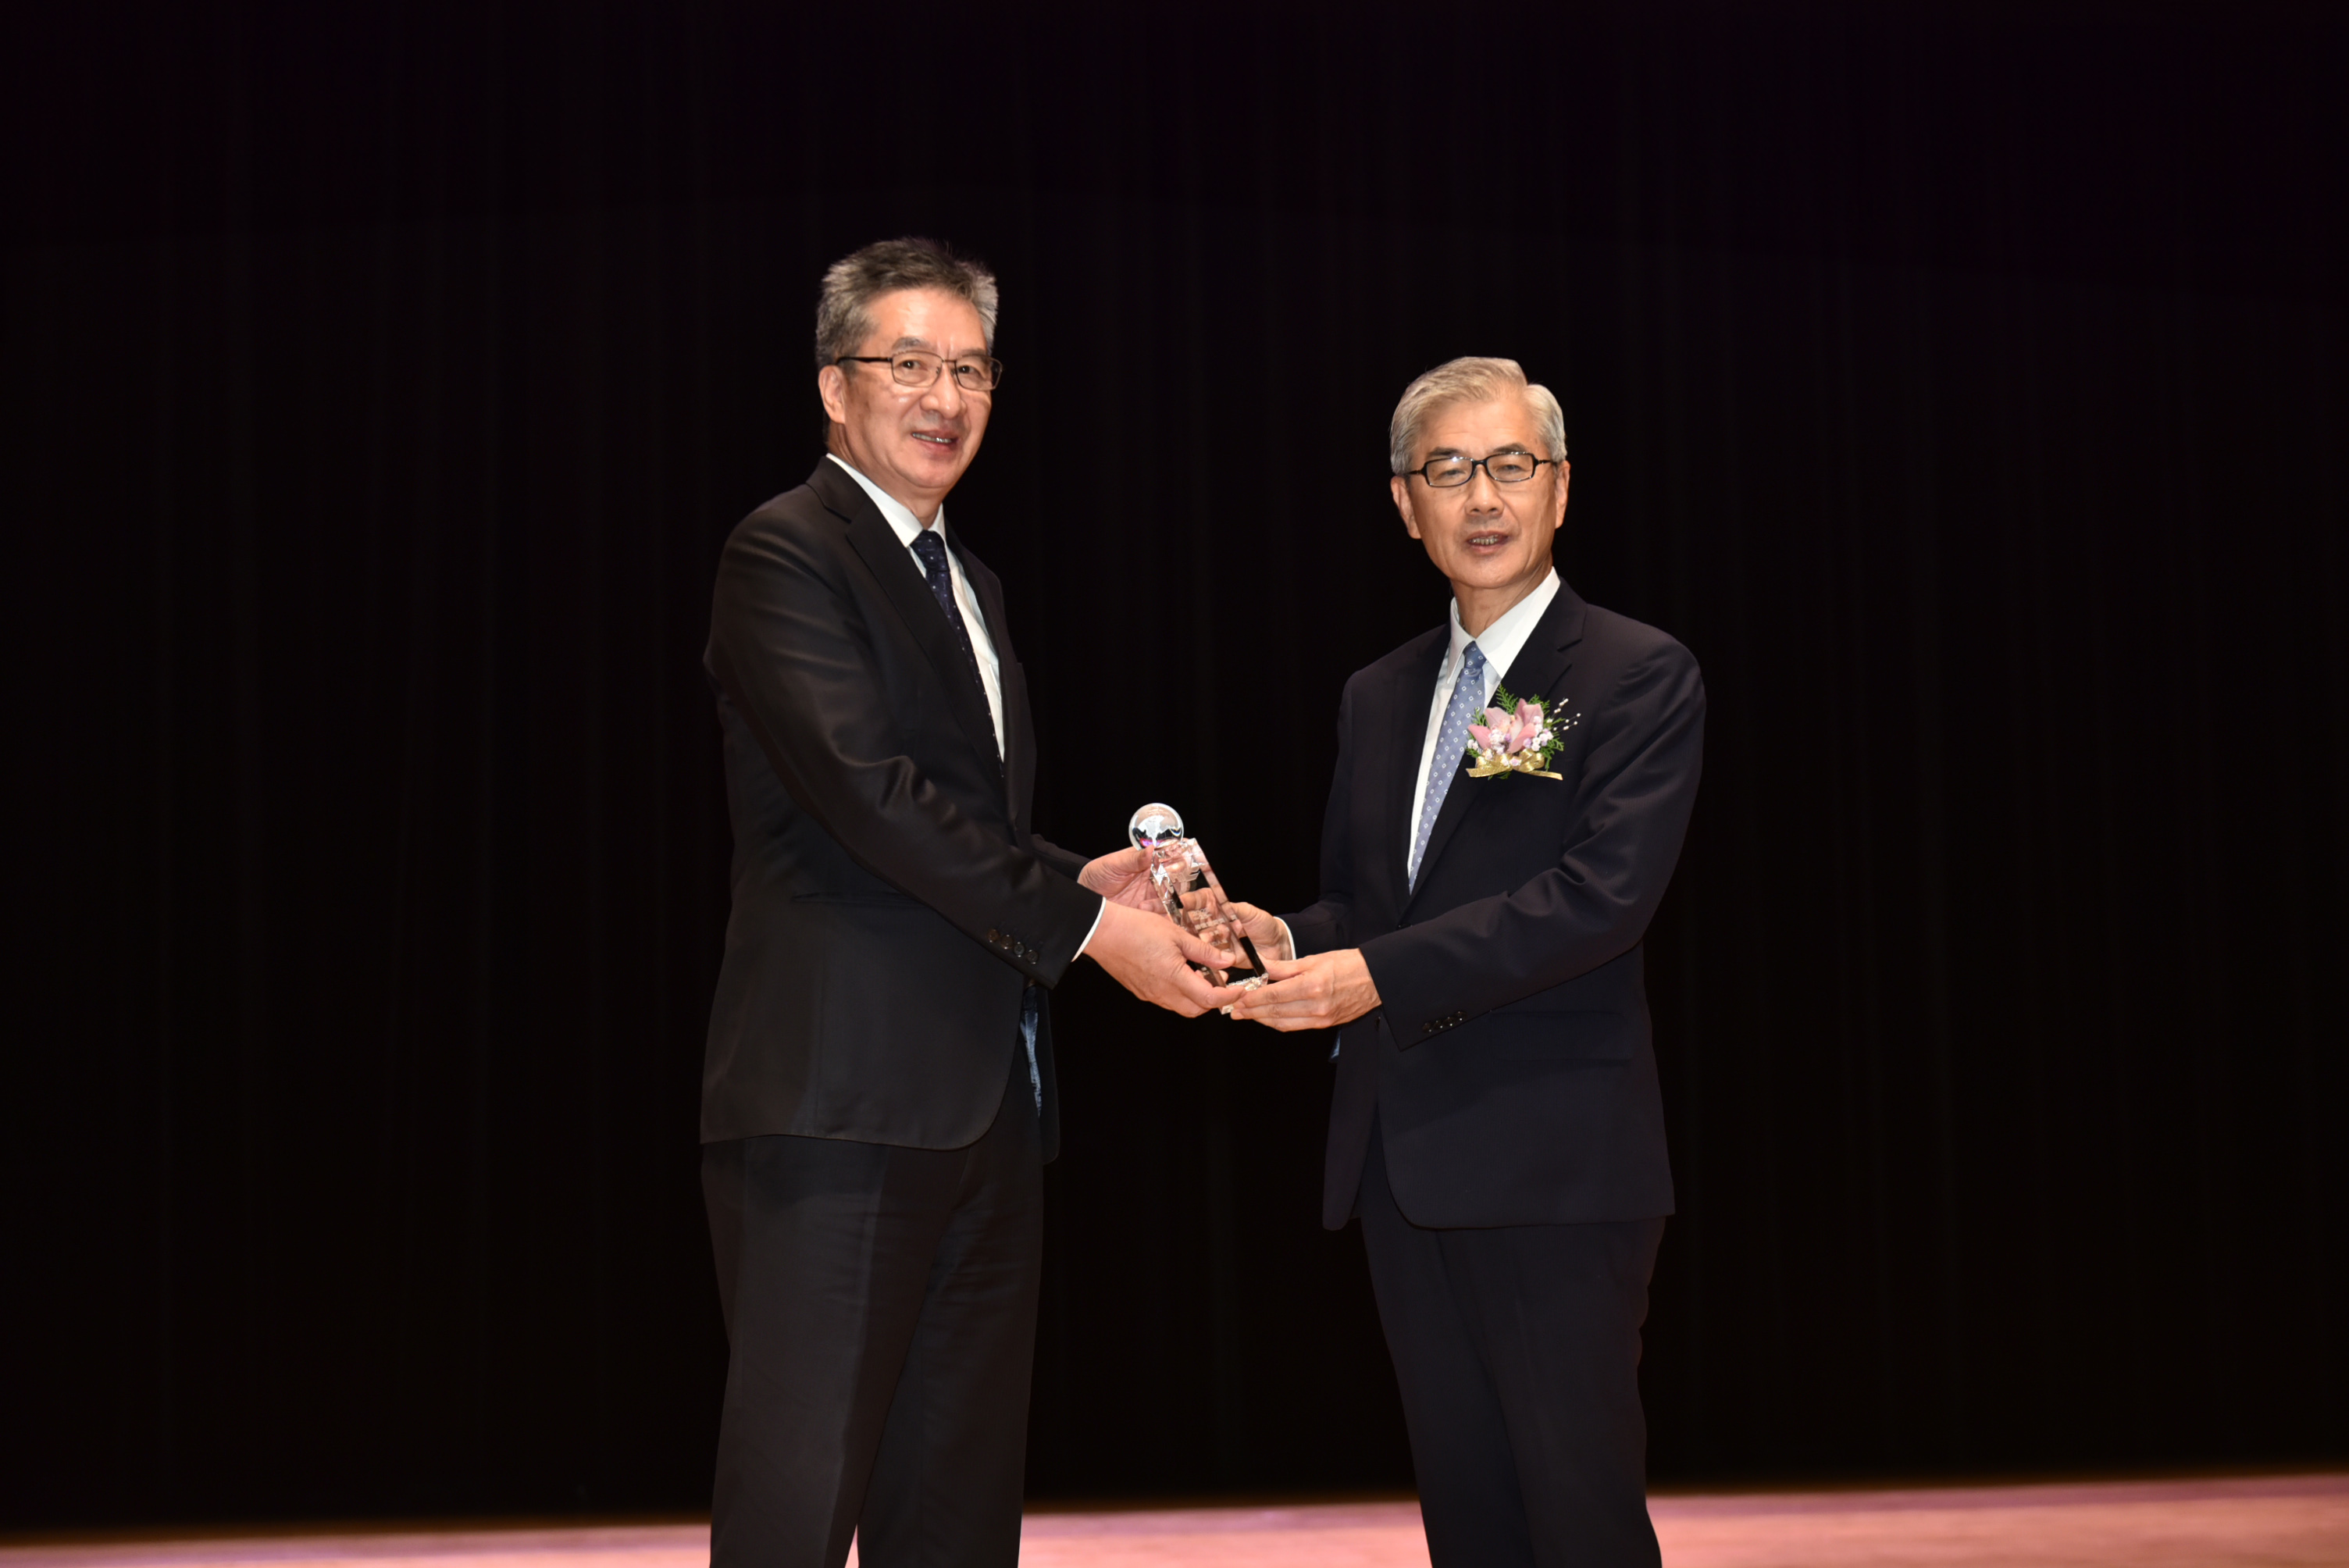 由台灣金融監督委員會主委黃天牧負責頒獎，永達保經陳慶鴻總經理代表領獎。